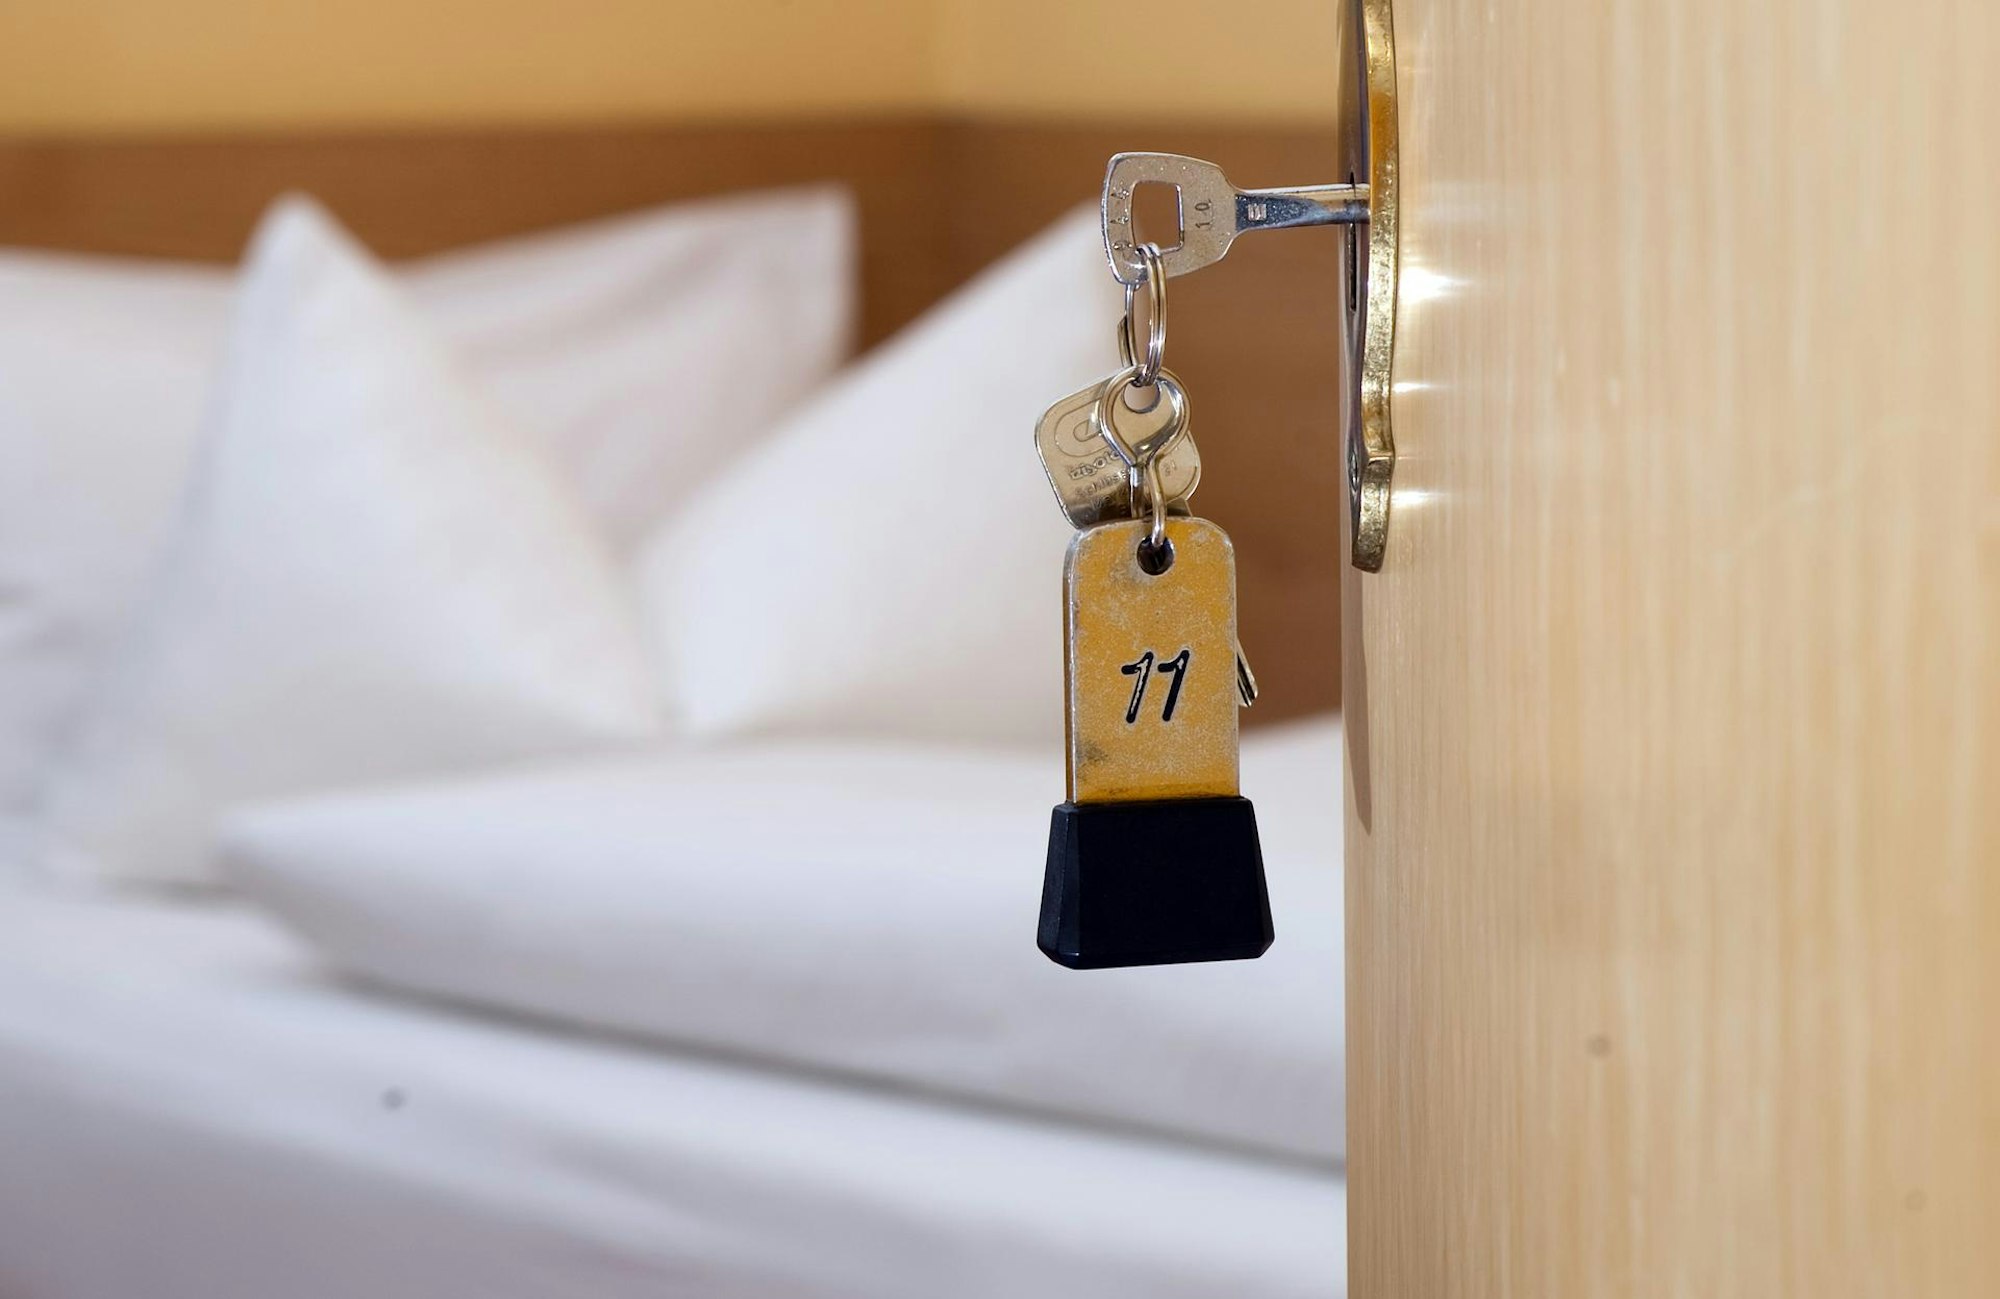 Hotelzimmer: Bett und Tür zum Hotelzimmer mit Schlüssel zum Zimmer